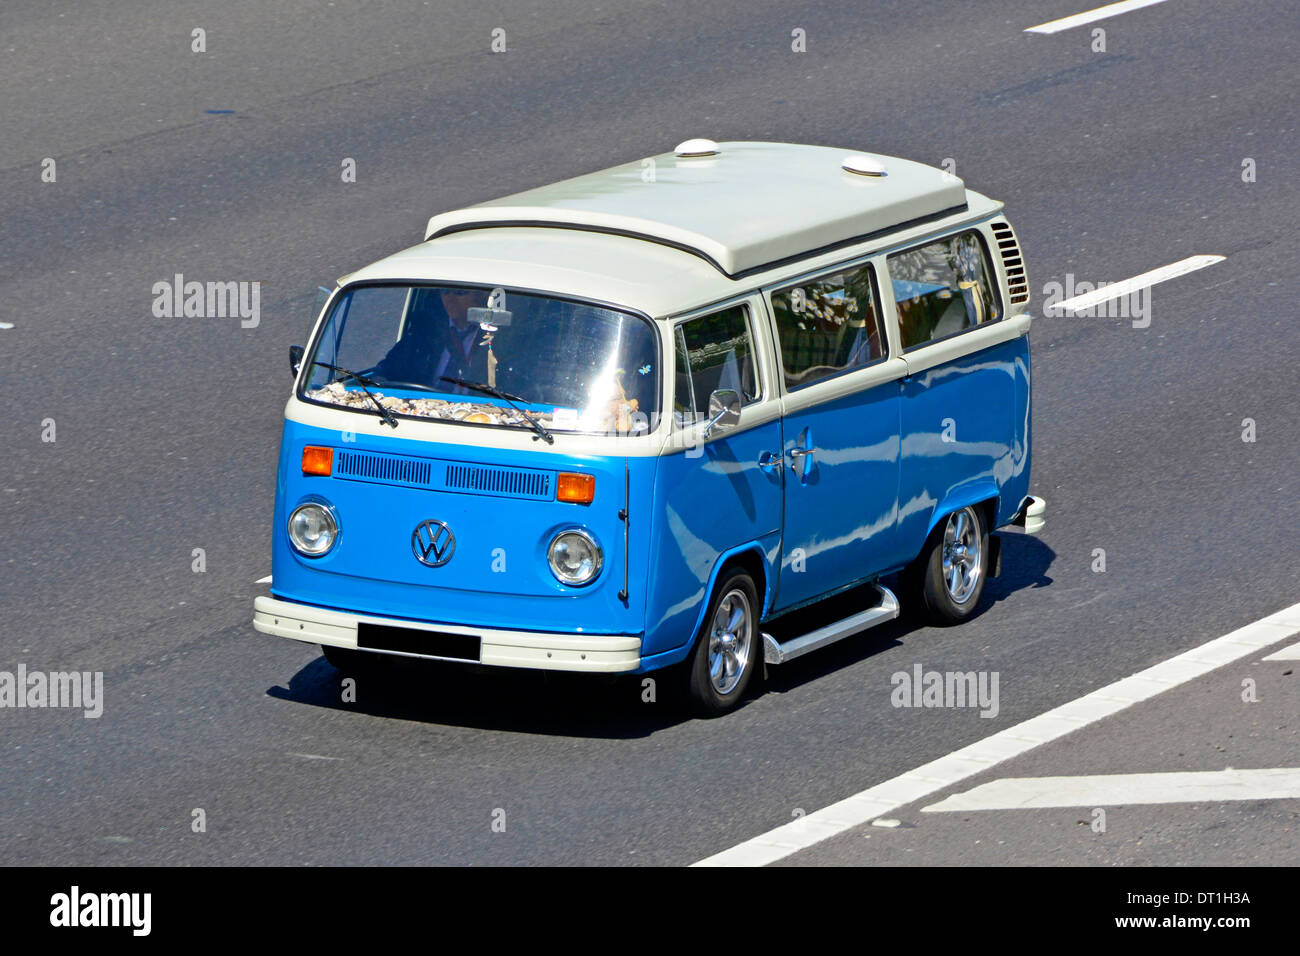 Azul y blanco icónico clásico VW Volkswagen camper van con bajada de techo elevable conduciendo por la autopista Inglaterra Fotografía stock -